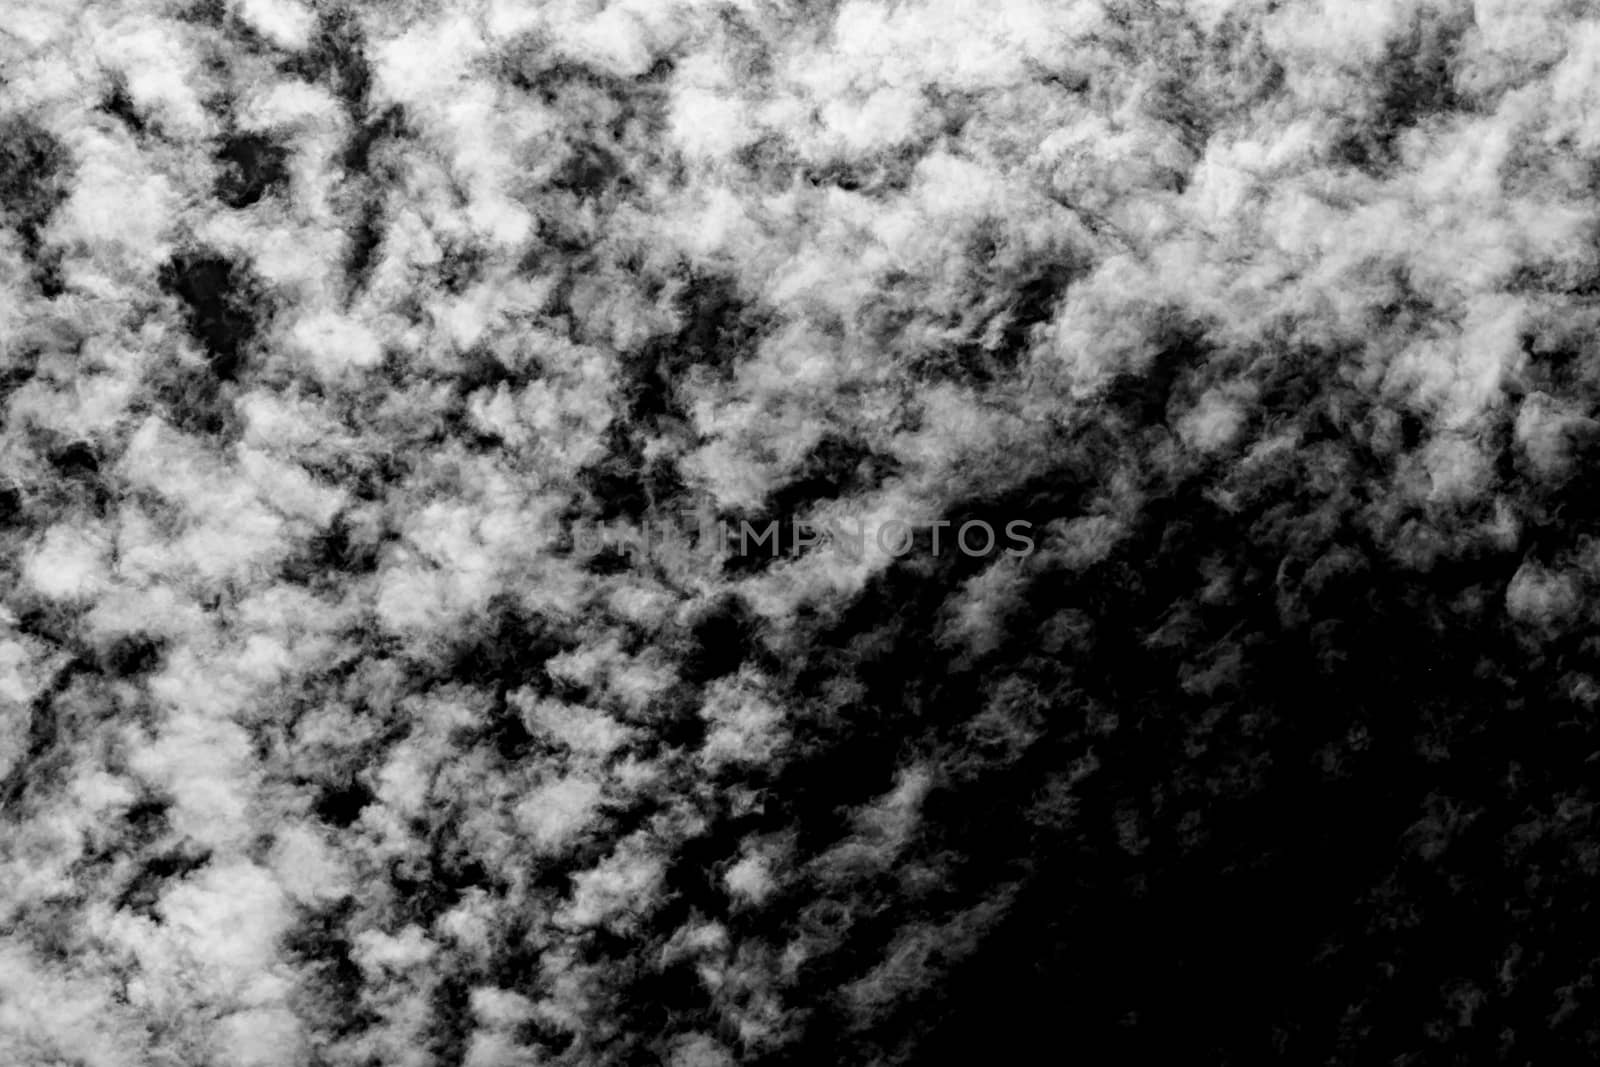 White cloud isolated on black background. Fog or smoke on black background.